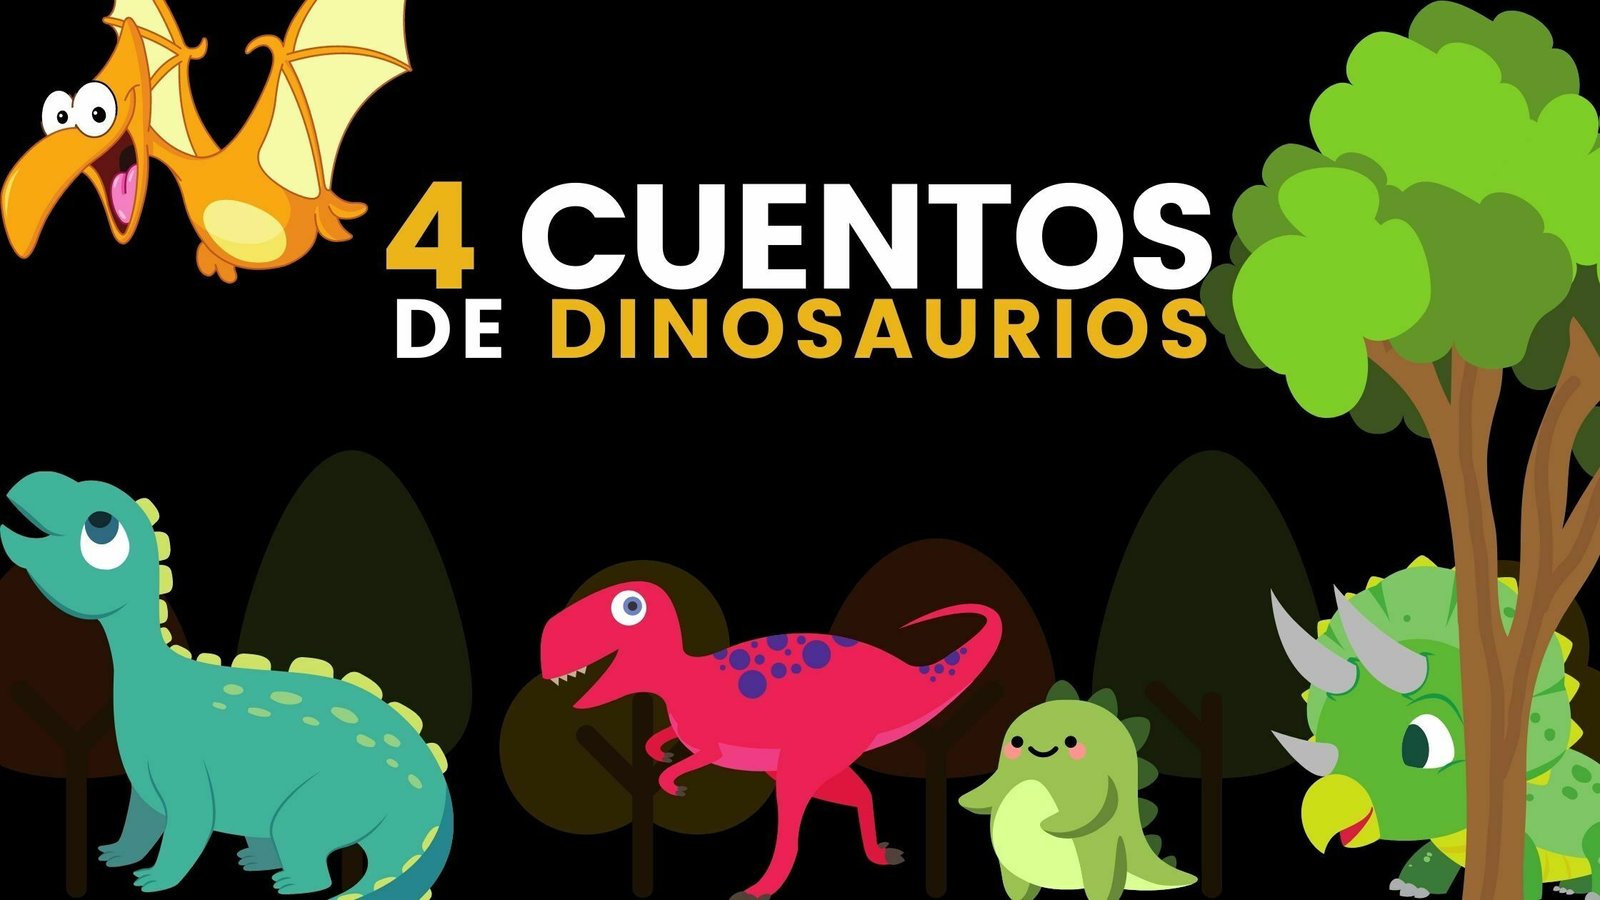 Cuentos cortos para niños de dinosaurios en español